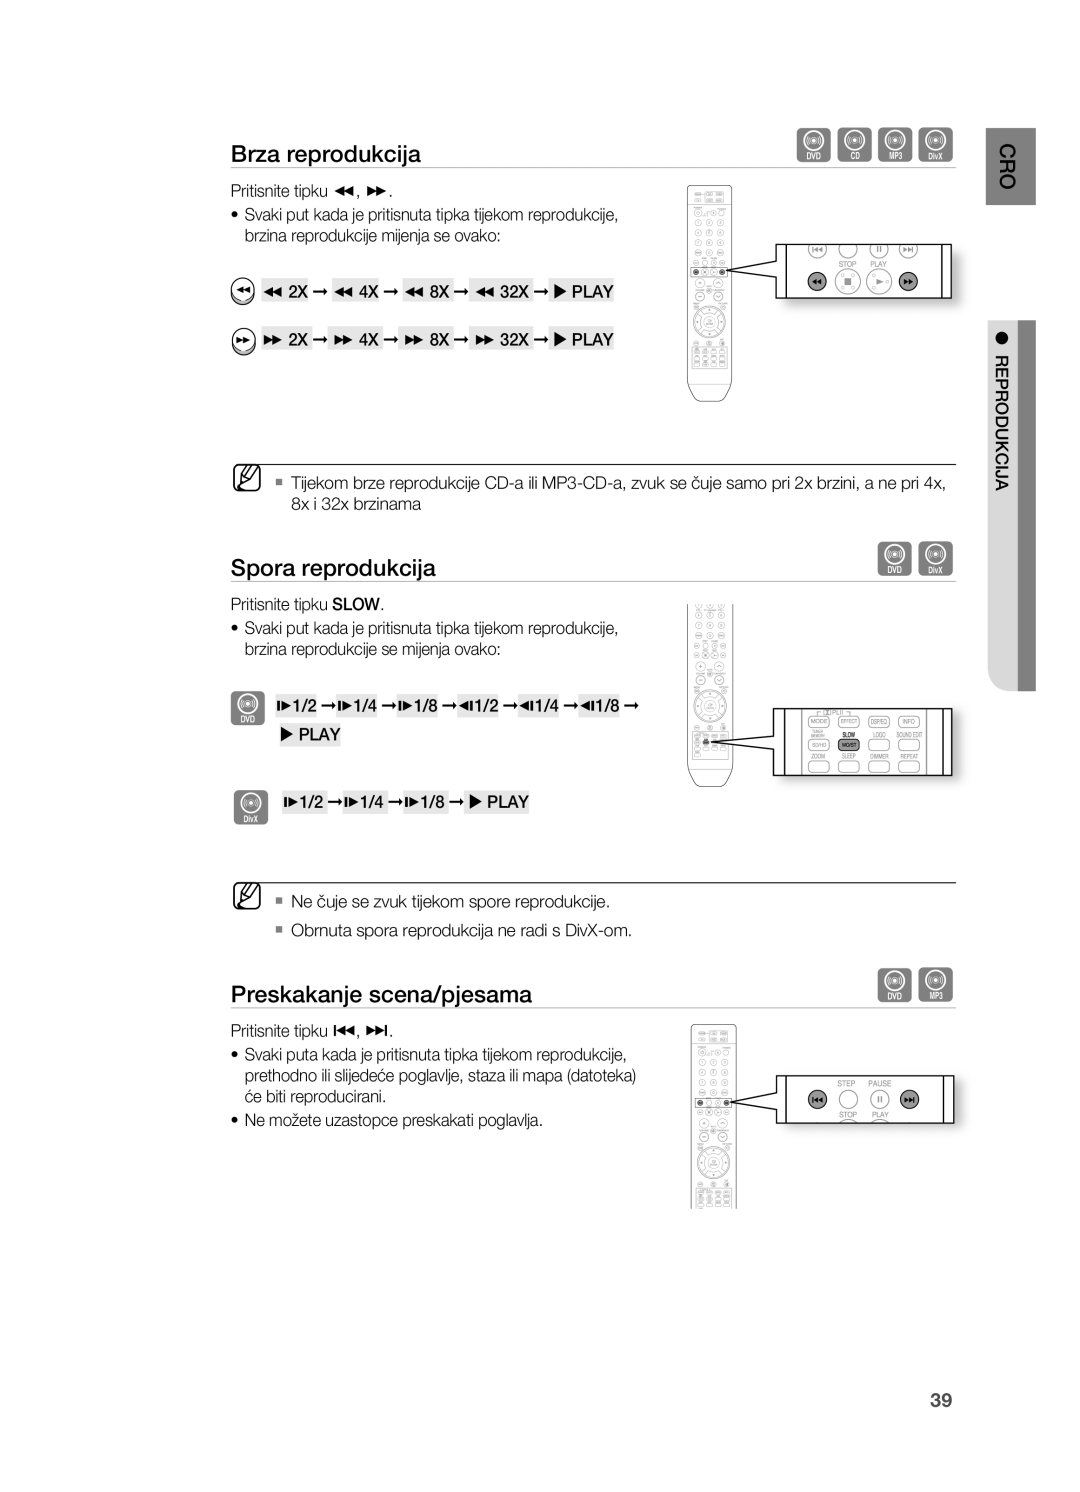 Samsung HT-TZ212R/EDC, HT-Z310R/EDC, HT-Z210R/EDC manual Spora reprodukcija, Preskakanje scena/pjesama, Brza reprodukcija 